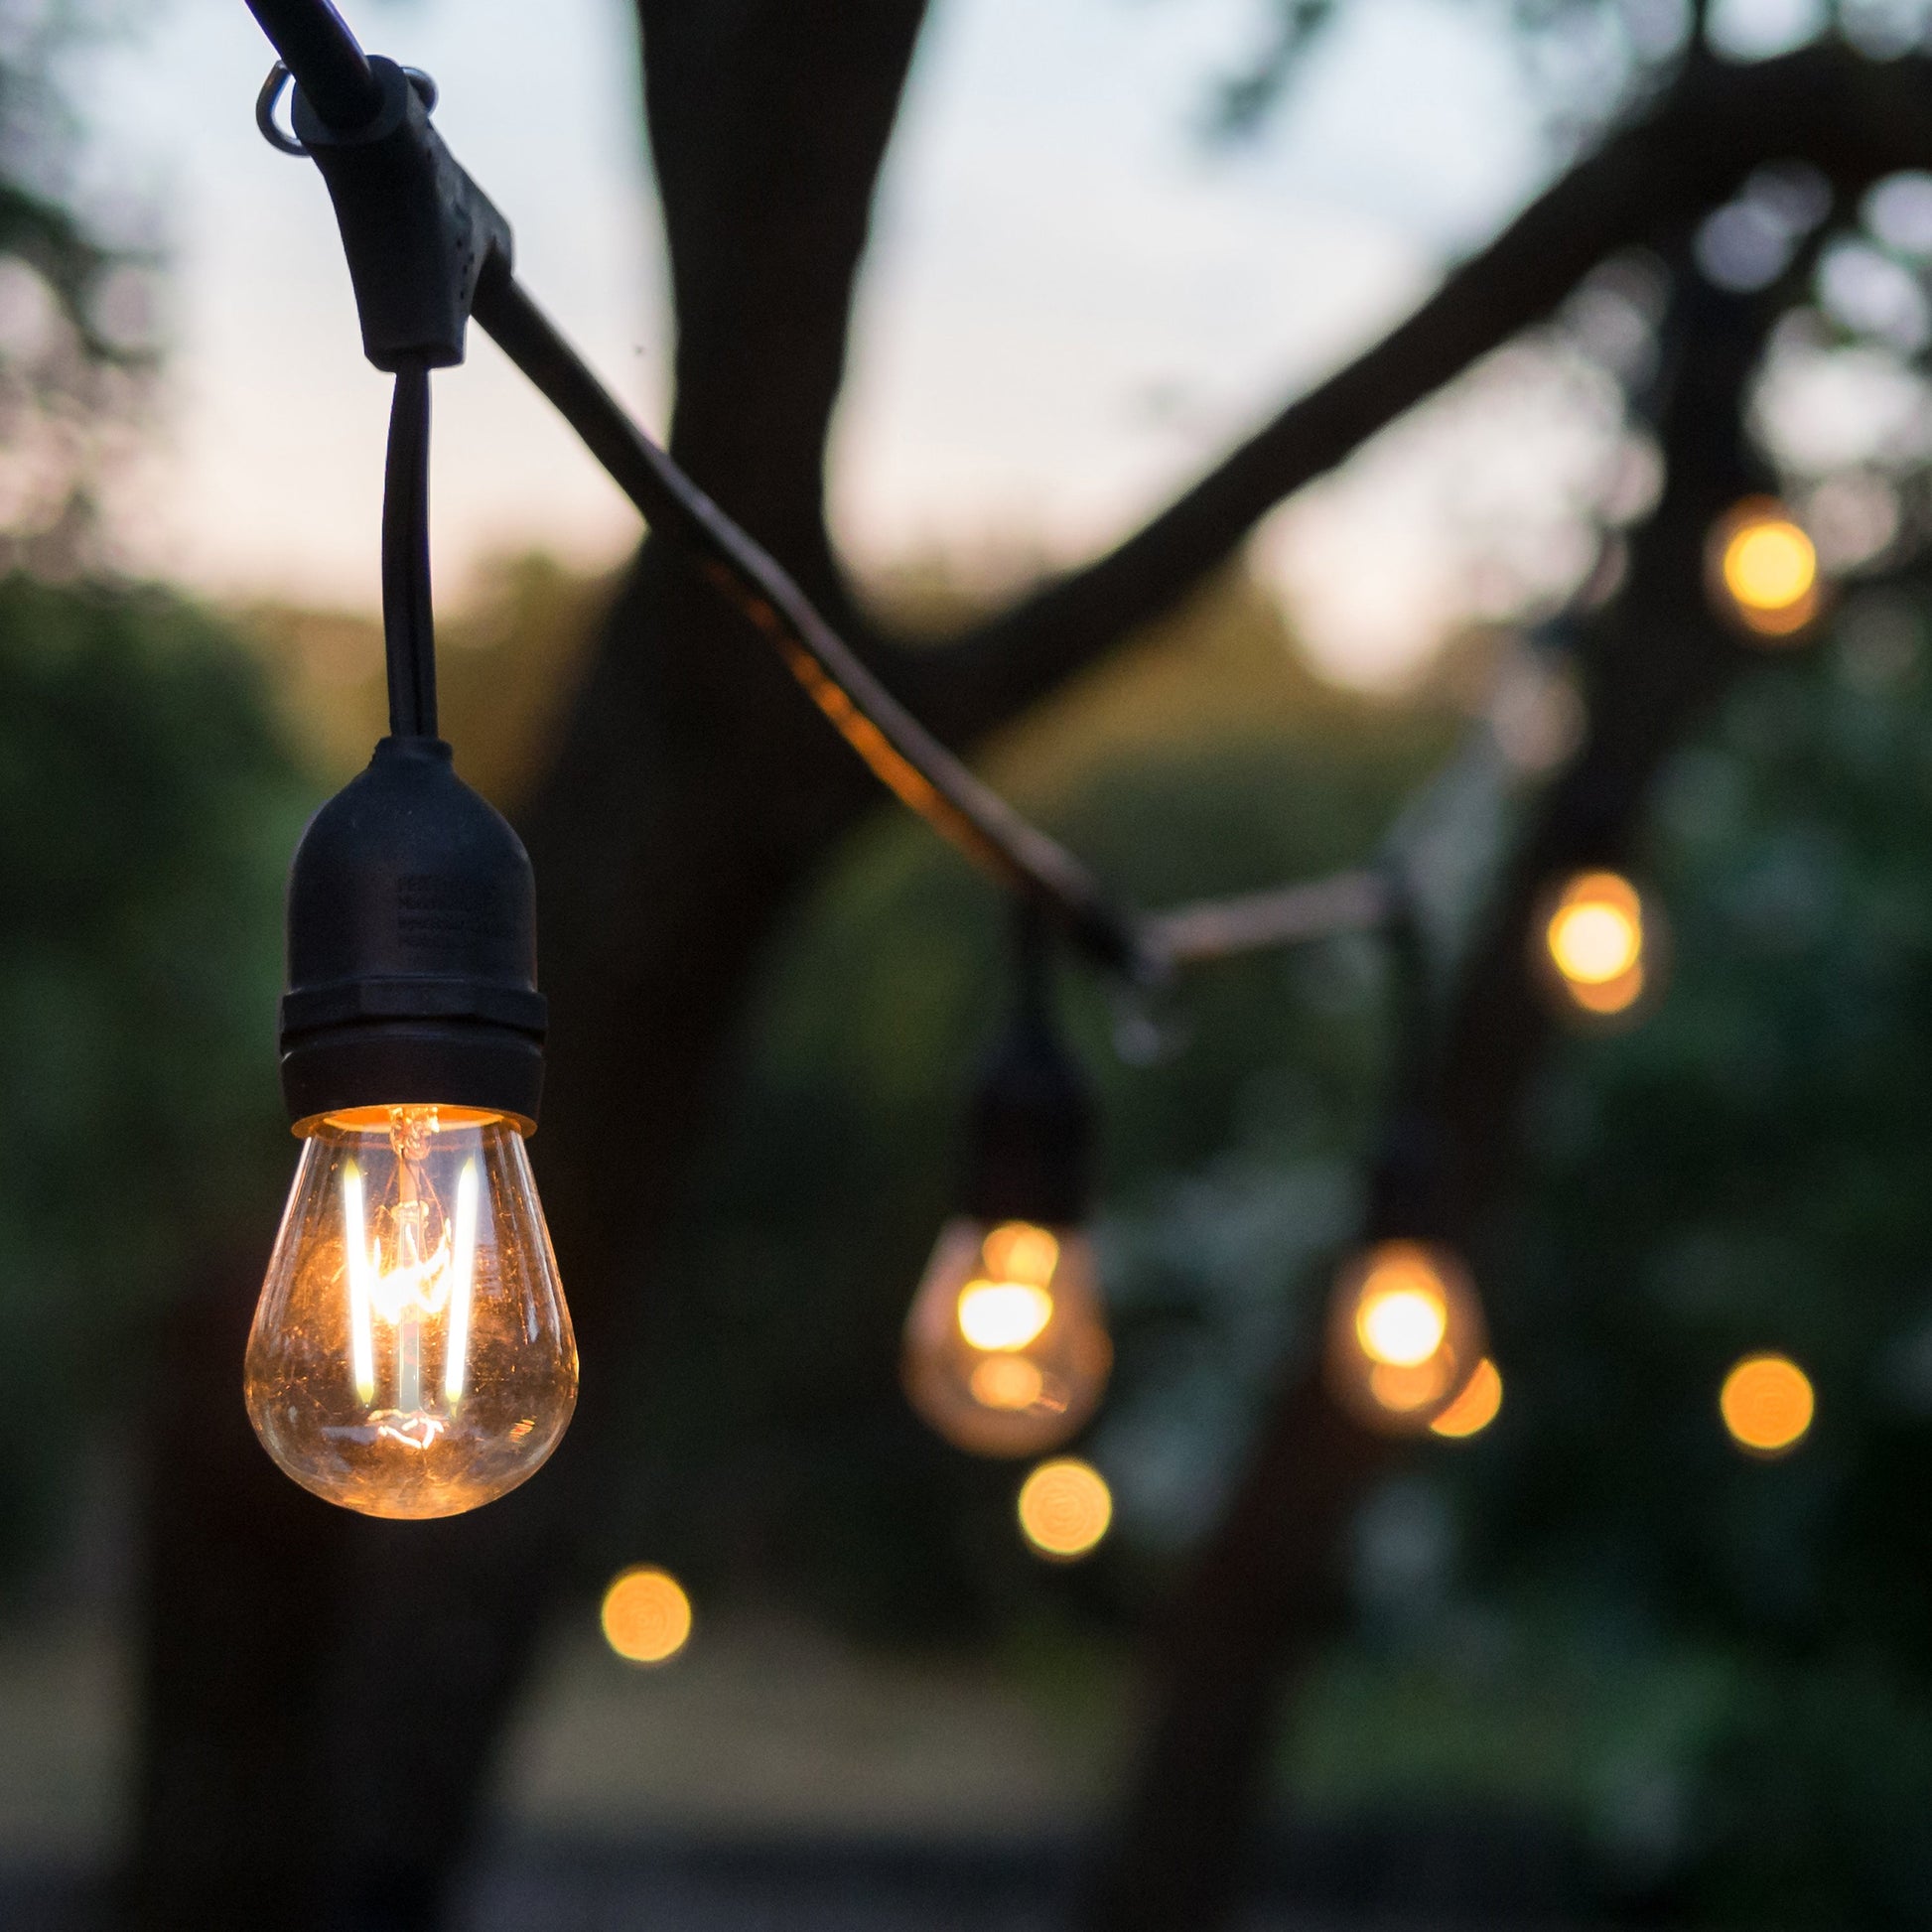 4lite Festoon Outdoor String Light E27 Screw Lamp Holders (Bulbs Not Included) - maplin.co.uk